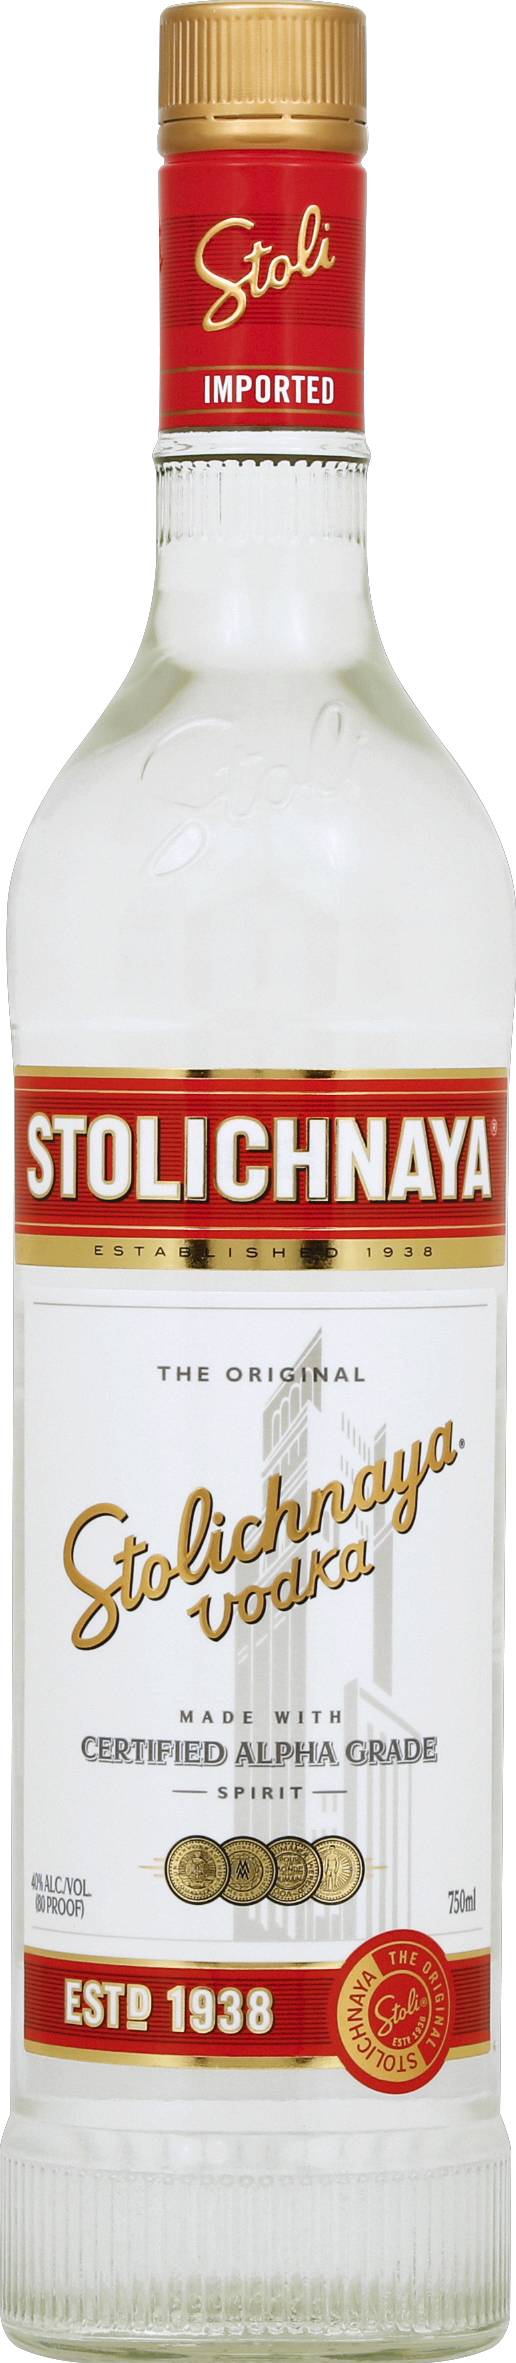 Stolichnaya the Original Vodka (750 ml)